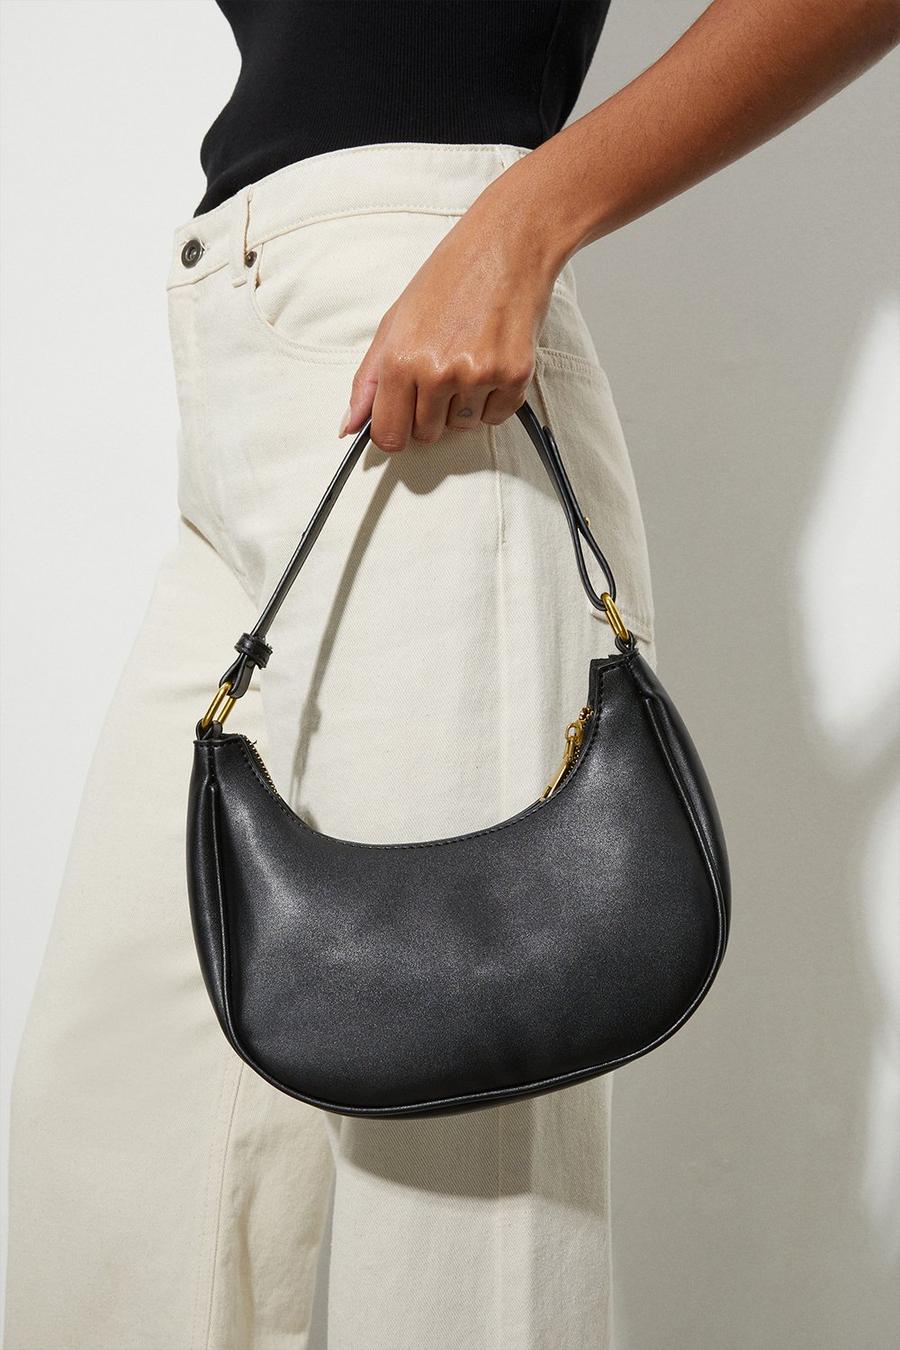 Shoulder Bag With Adjustable Length Strap